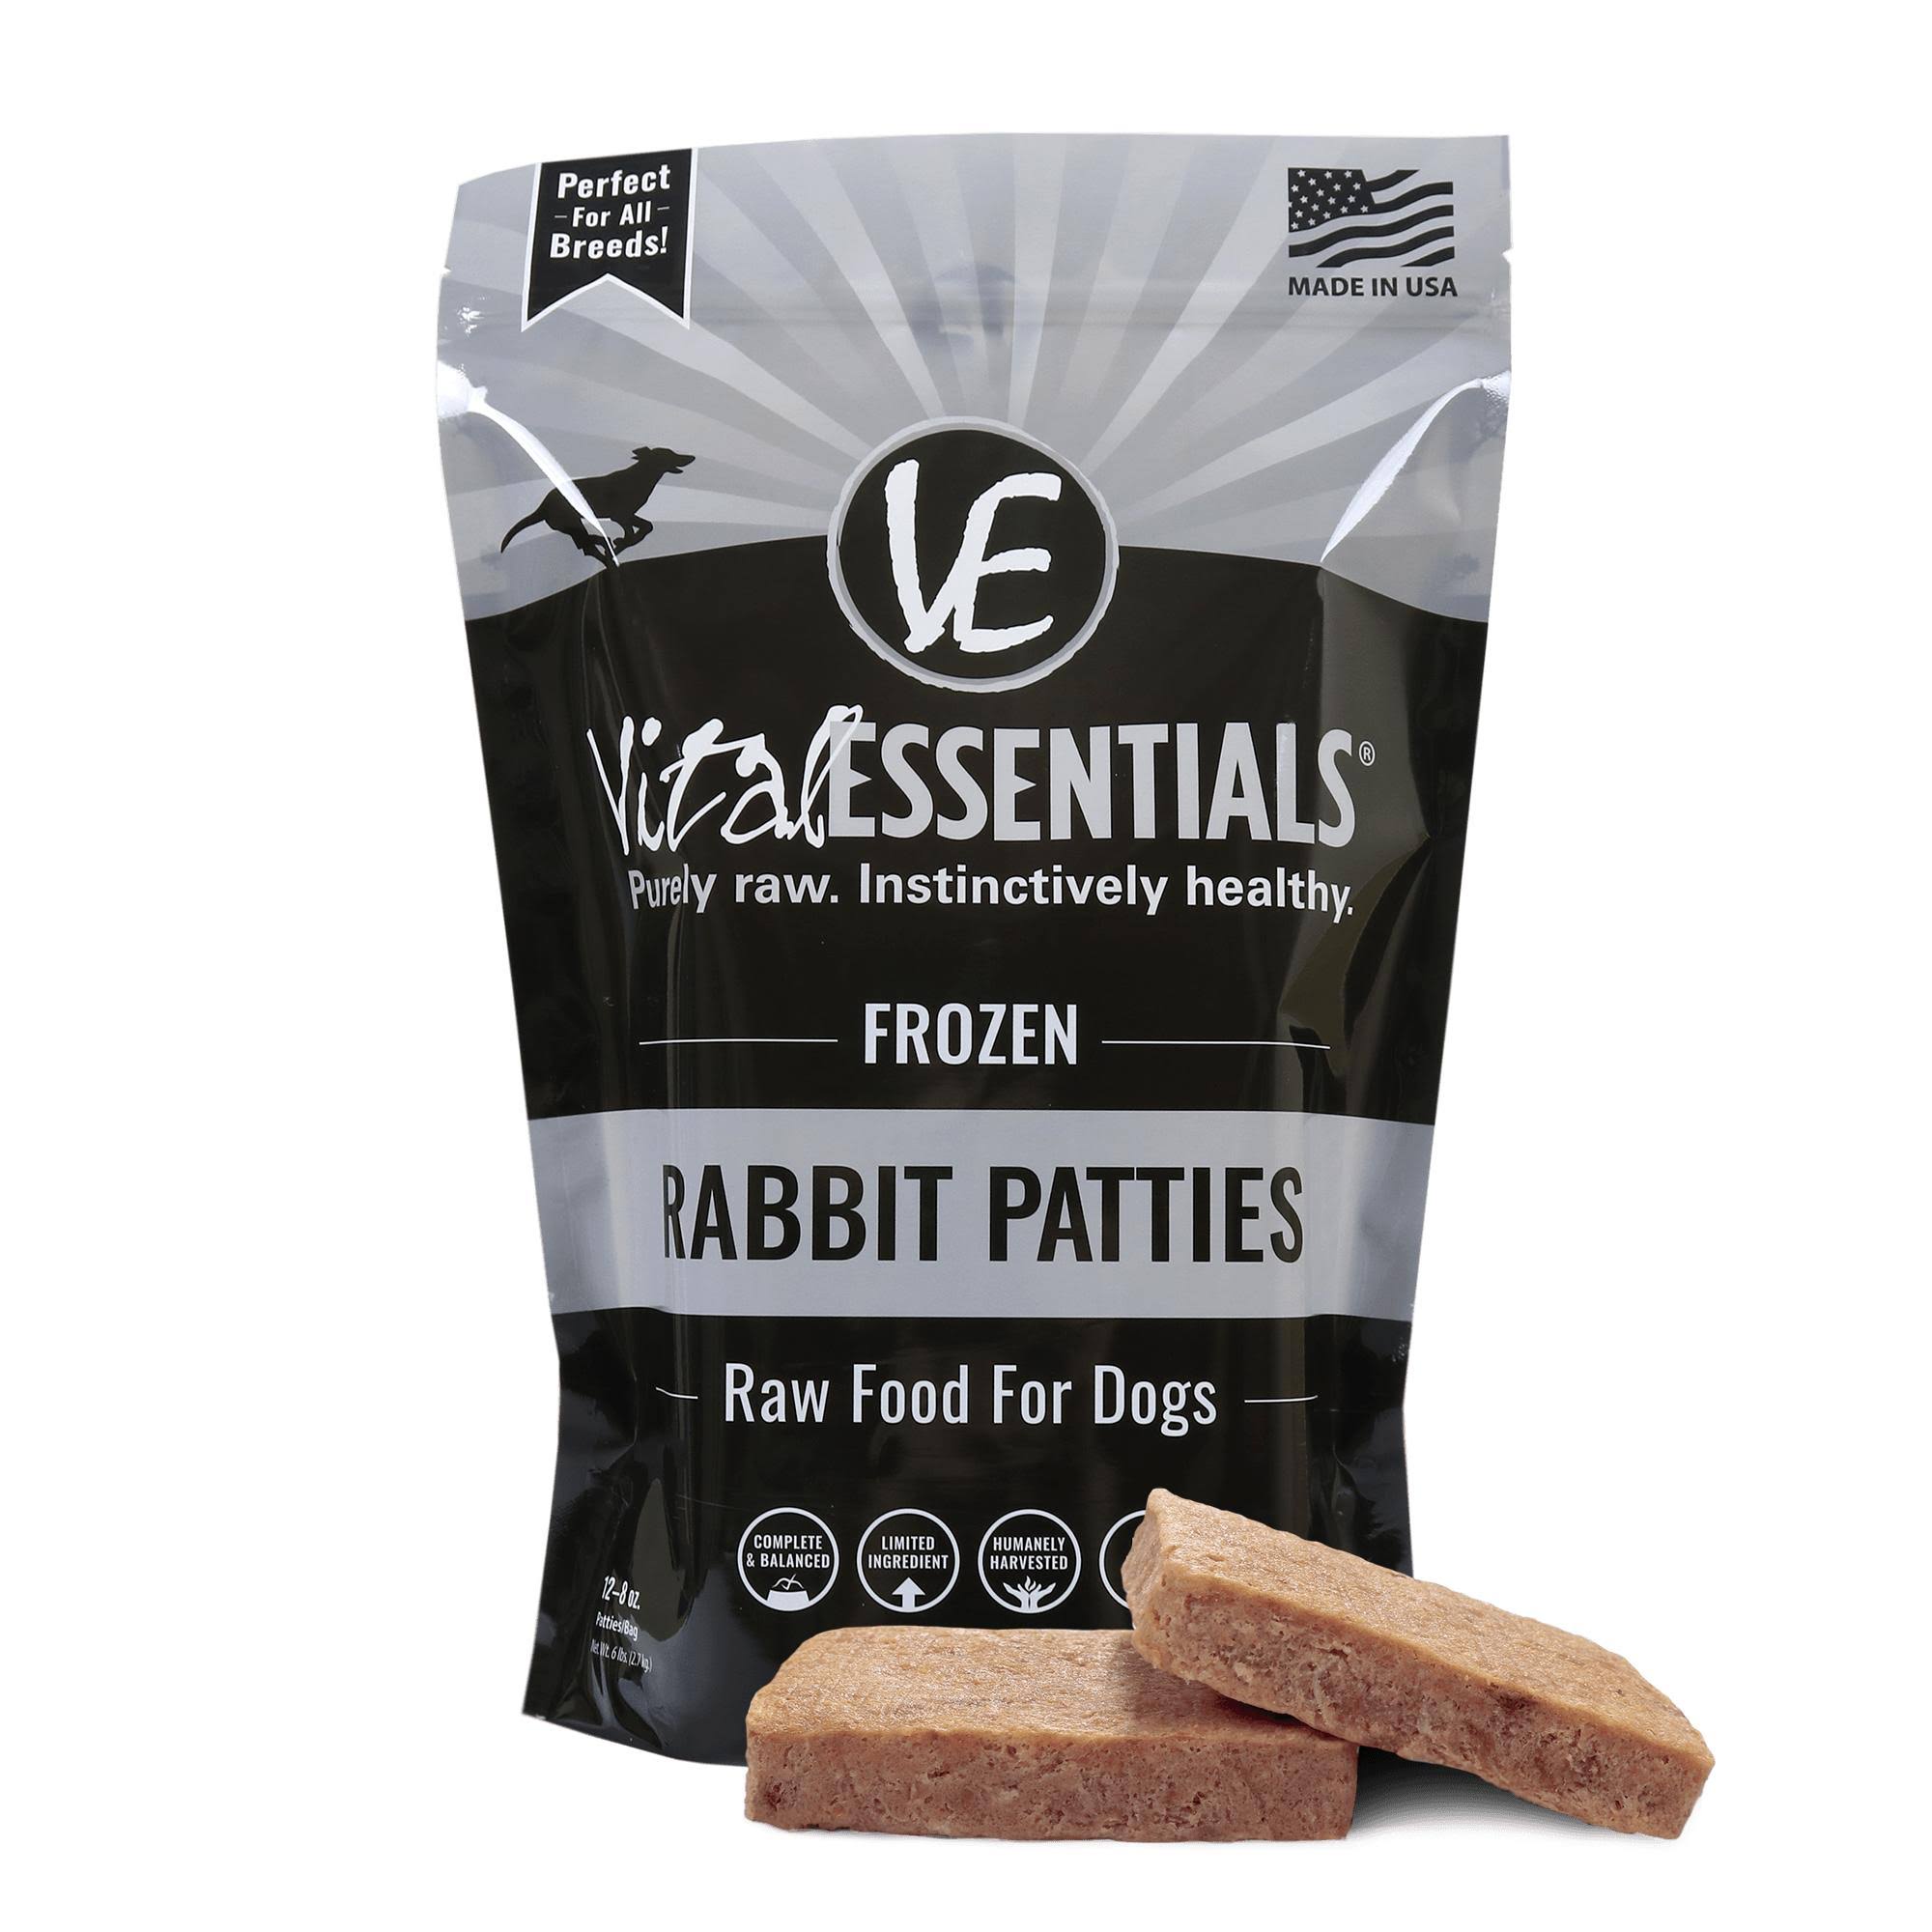 Vital Essentials Raw Rabbit Patties Grain-Free Frozen Dog Food